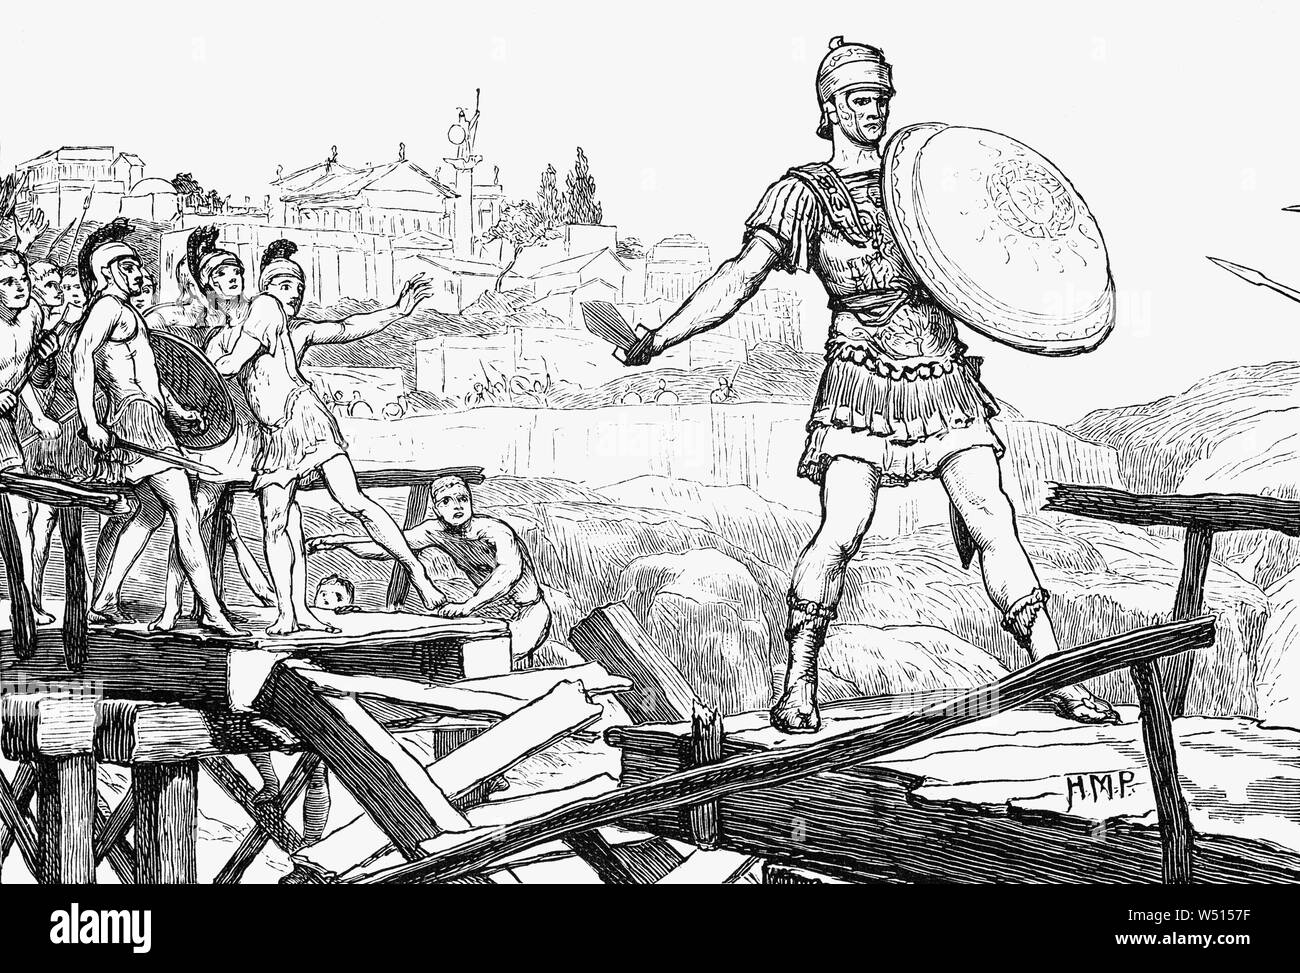 Publius Steffen Cocles war Offizier in der Armee der frühen römischen Republik das berühmt der Pons Sublicius, von der die Invasionsarmee der Etruskischen König Lars Porsena von Clusium im späten 6 Jahrhundert v. Chr. verteidigt, während des Krieges zwischen Rom und Clusium. Durch die Verteidigung das schmale Ende der Brücke, die früheste bekannte Brücke des antiken Rom und überspannt den Fluss Tiber, er - zusammen mit zwei anderen - war in der Lage, die angreifende Armee lange genug zu halten, damit andere Römer die Brücke hinter ihn zu vernichten, Sperrung voraus der Etrusker und Speichern der Stadt. Stockfoto